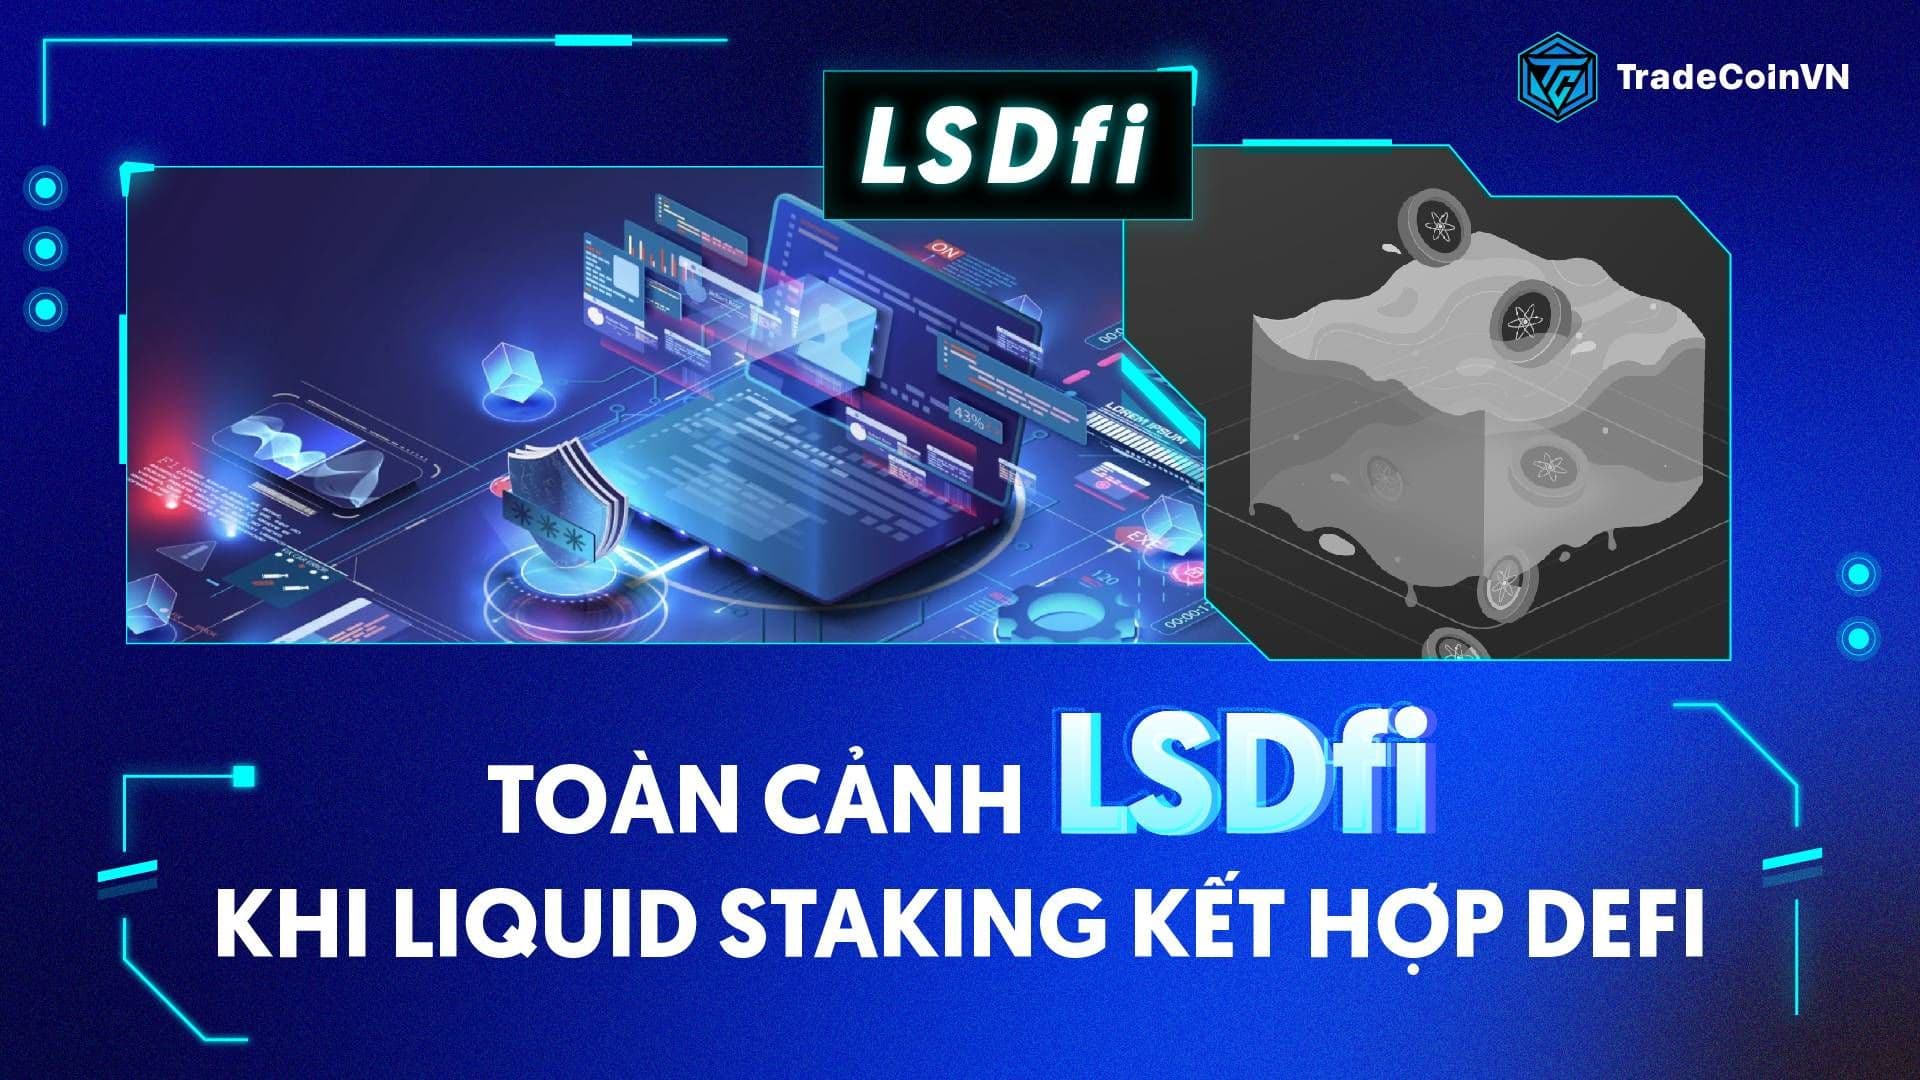 Toàn cảnh LSDfi: Khi Liquid Staking kết hợp DeFi là một xu hướng mới